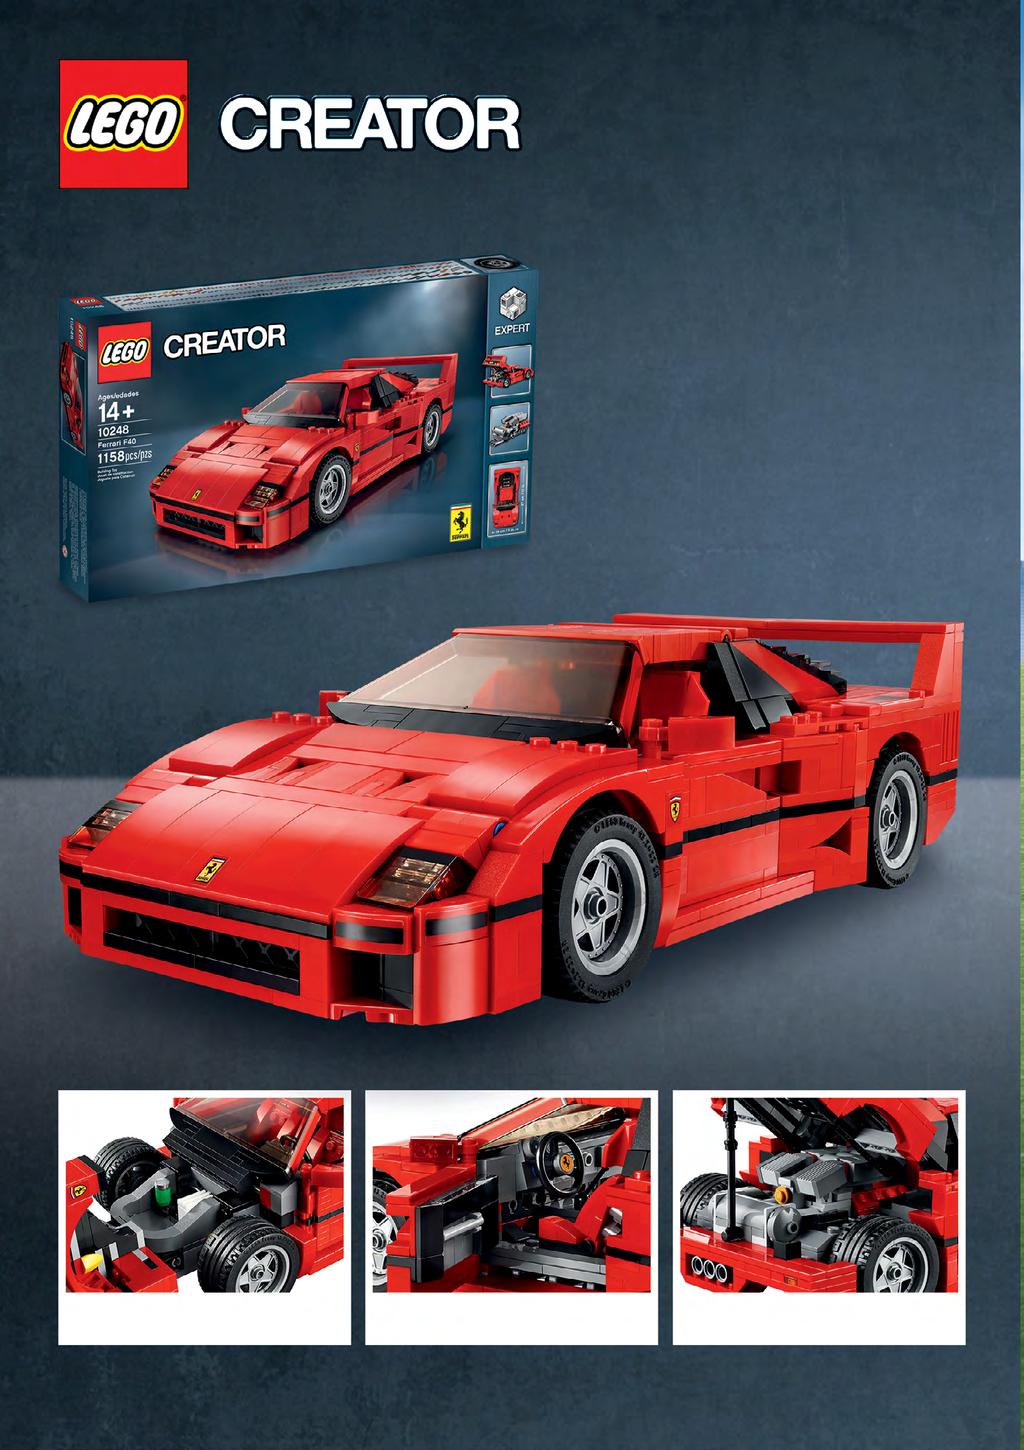 MEGÉRKEZETT A FERRARI IKONIKUS MODELLJE Ez a fantasztikus LEGO autó, magában rejti mindazon részletet amelyek ikonikussá tették ezt a sportkocsit: a karcsú aerodinamikai elemek, jellegzetes hátsó